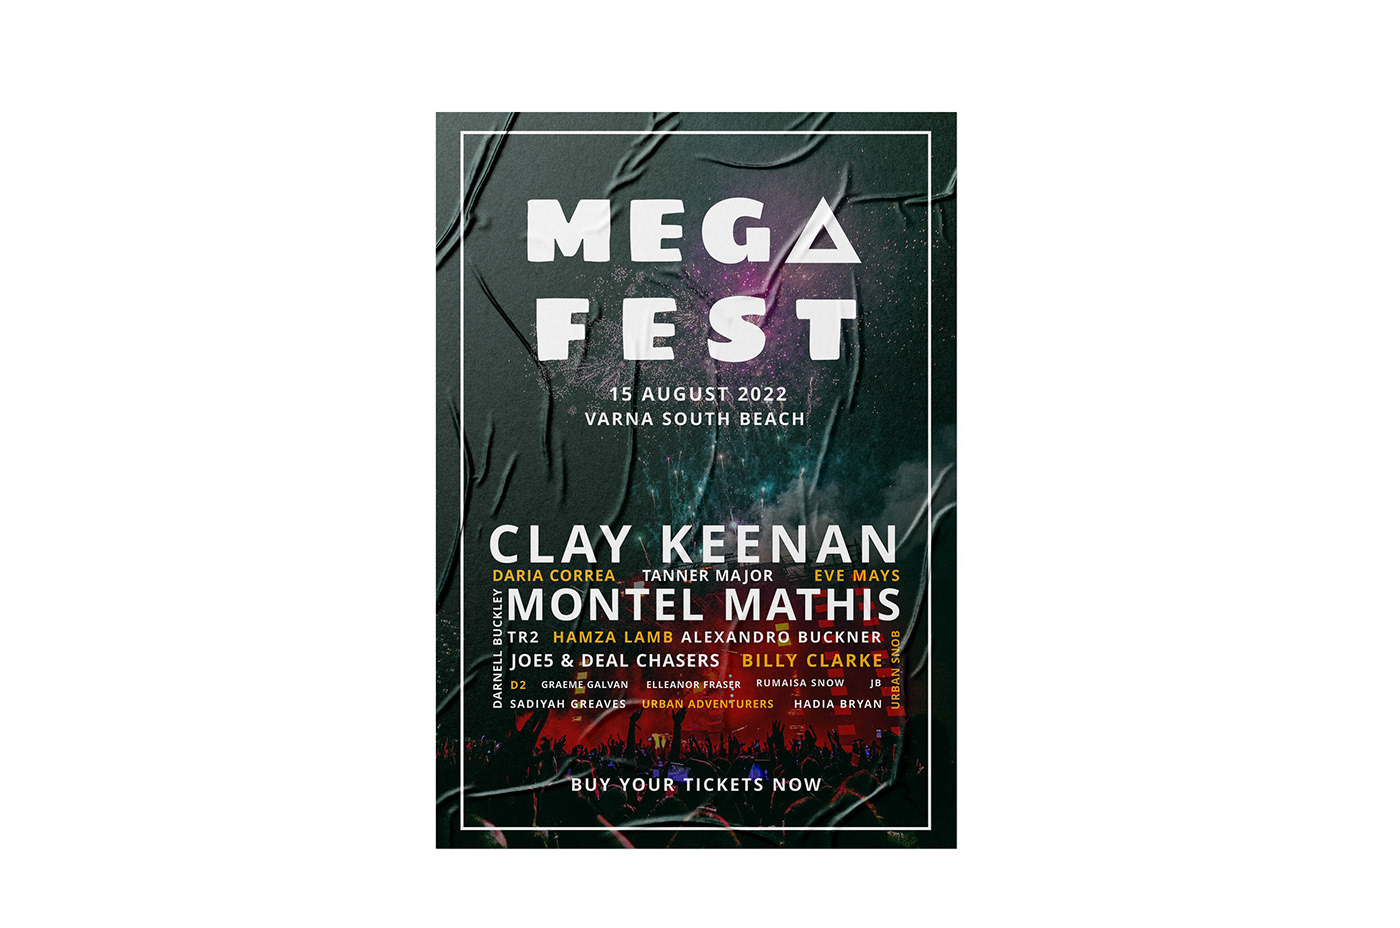 branding  Event fest festival logo mega Mockup music poster ticket